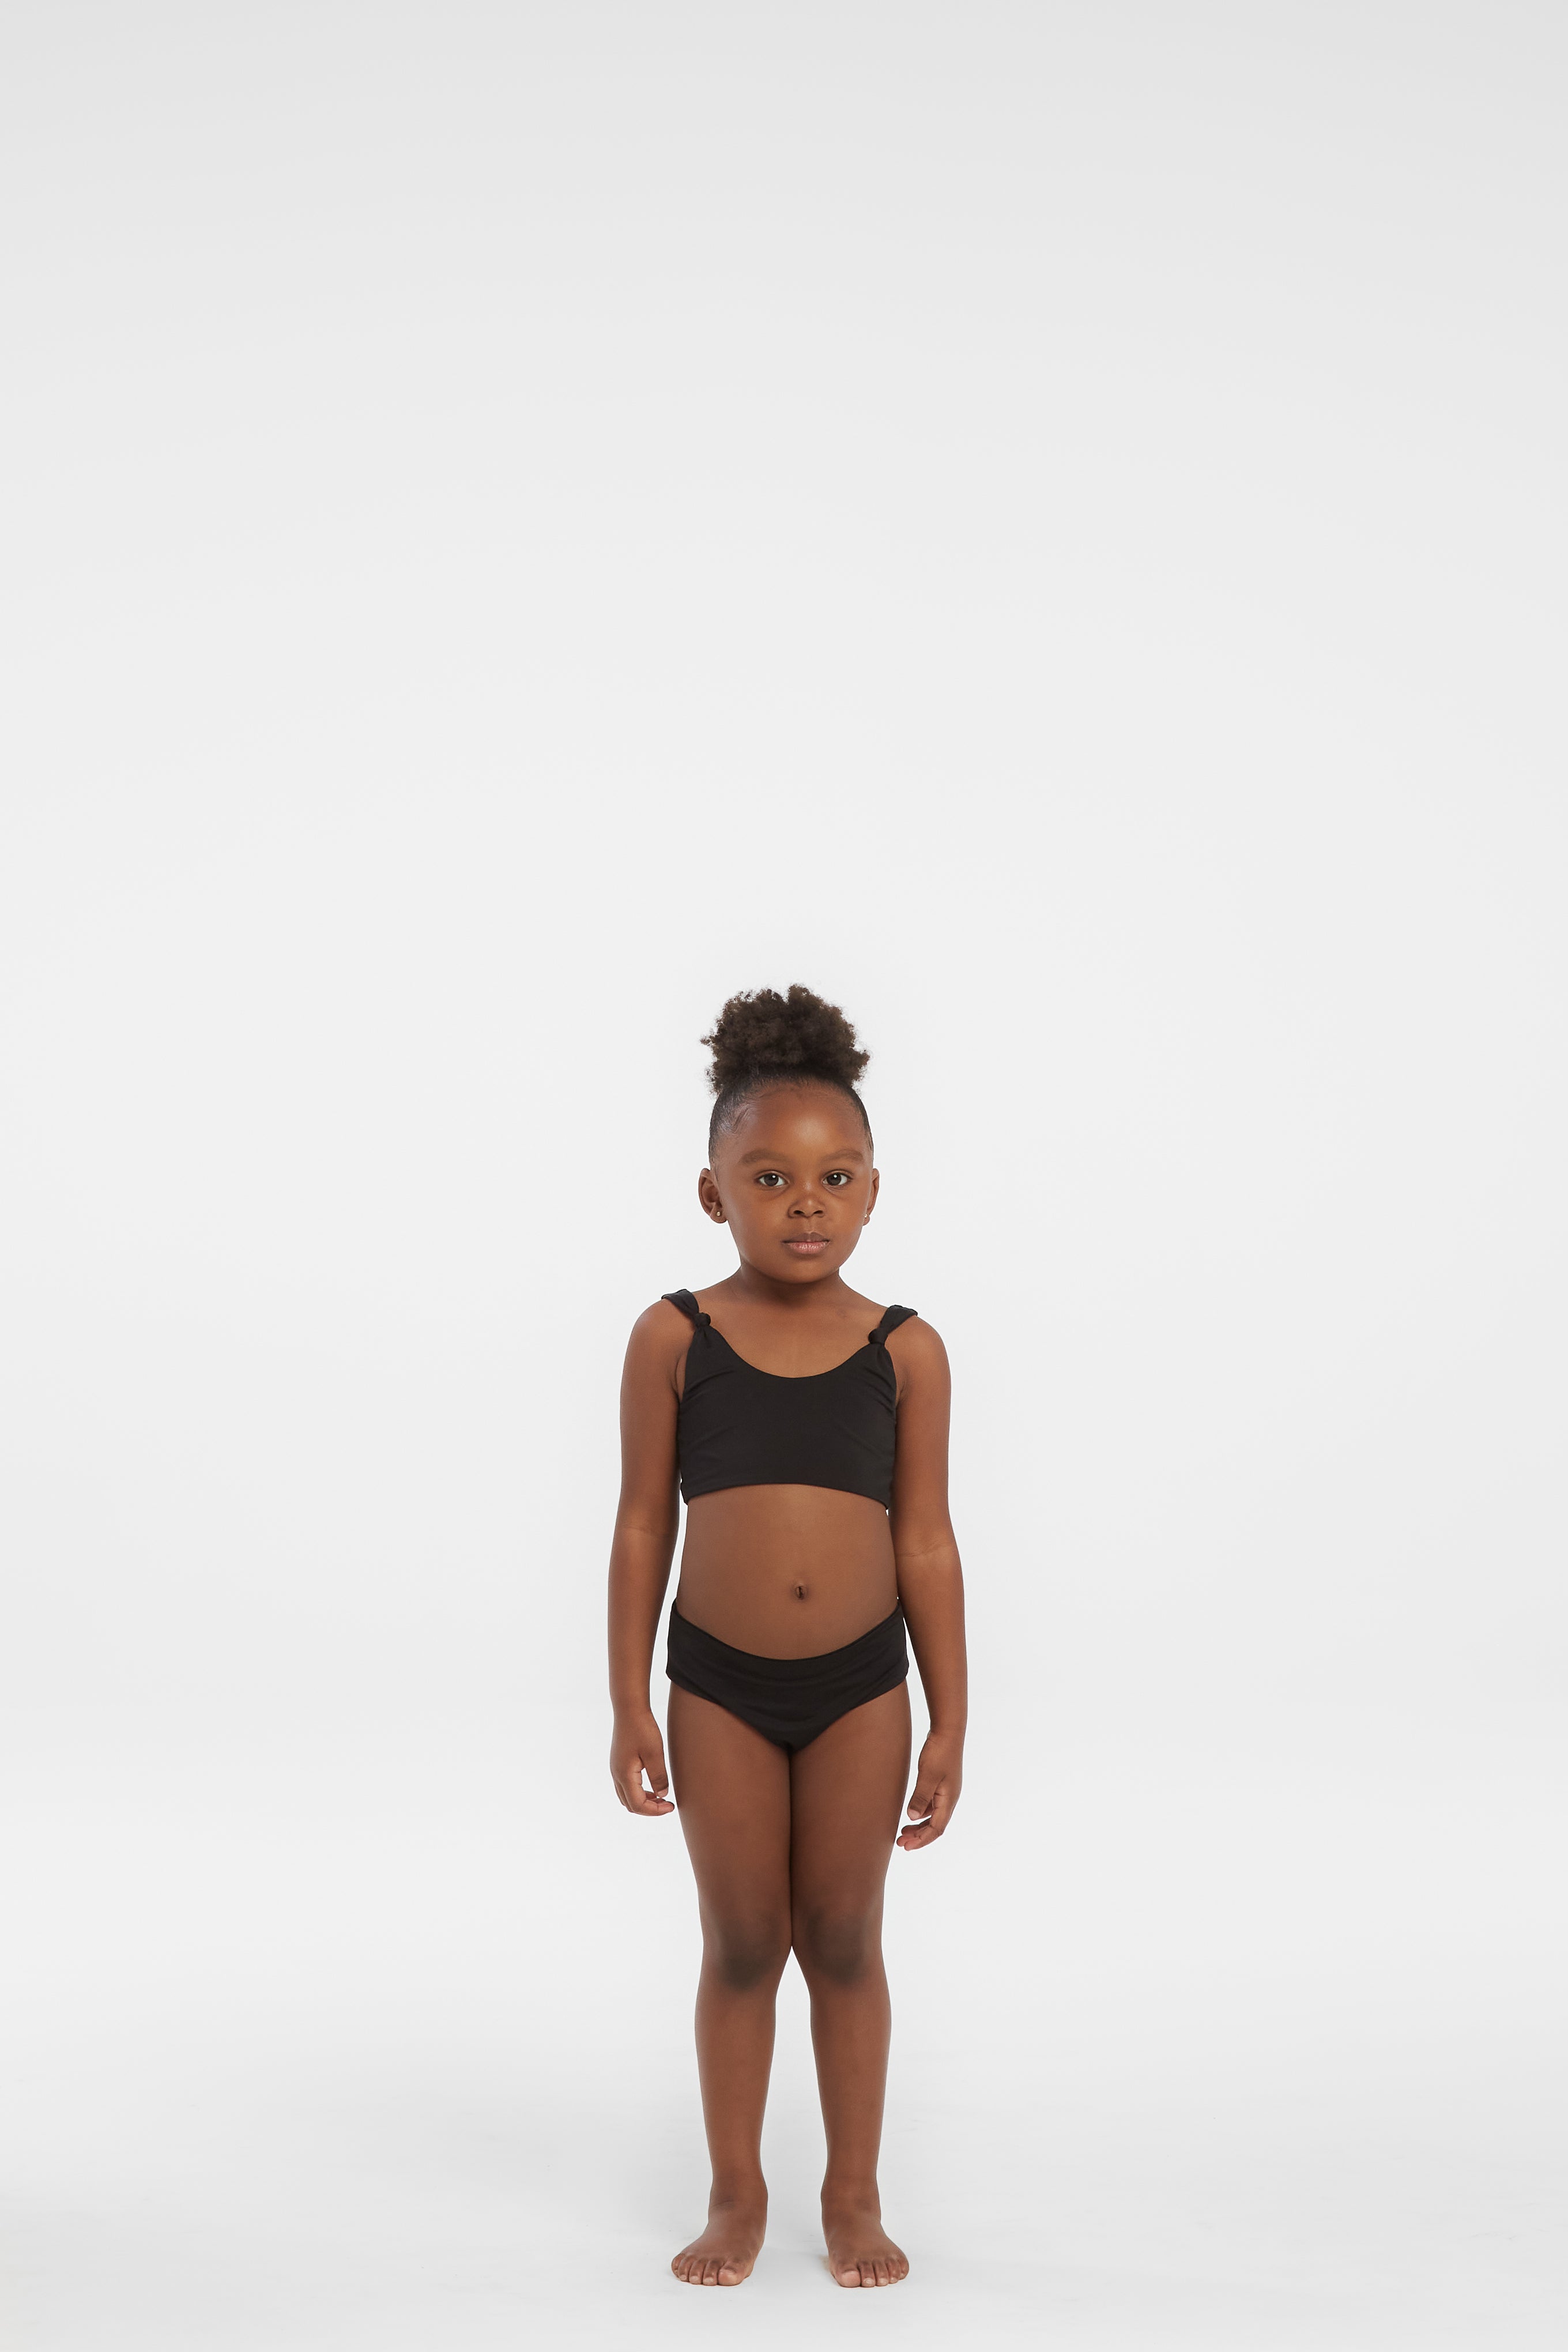 Toddler Black Bikini Top